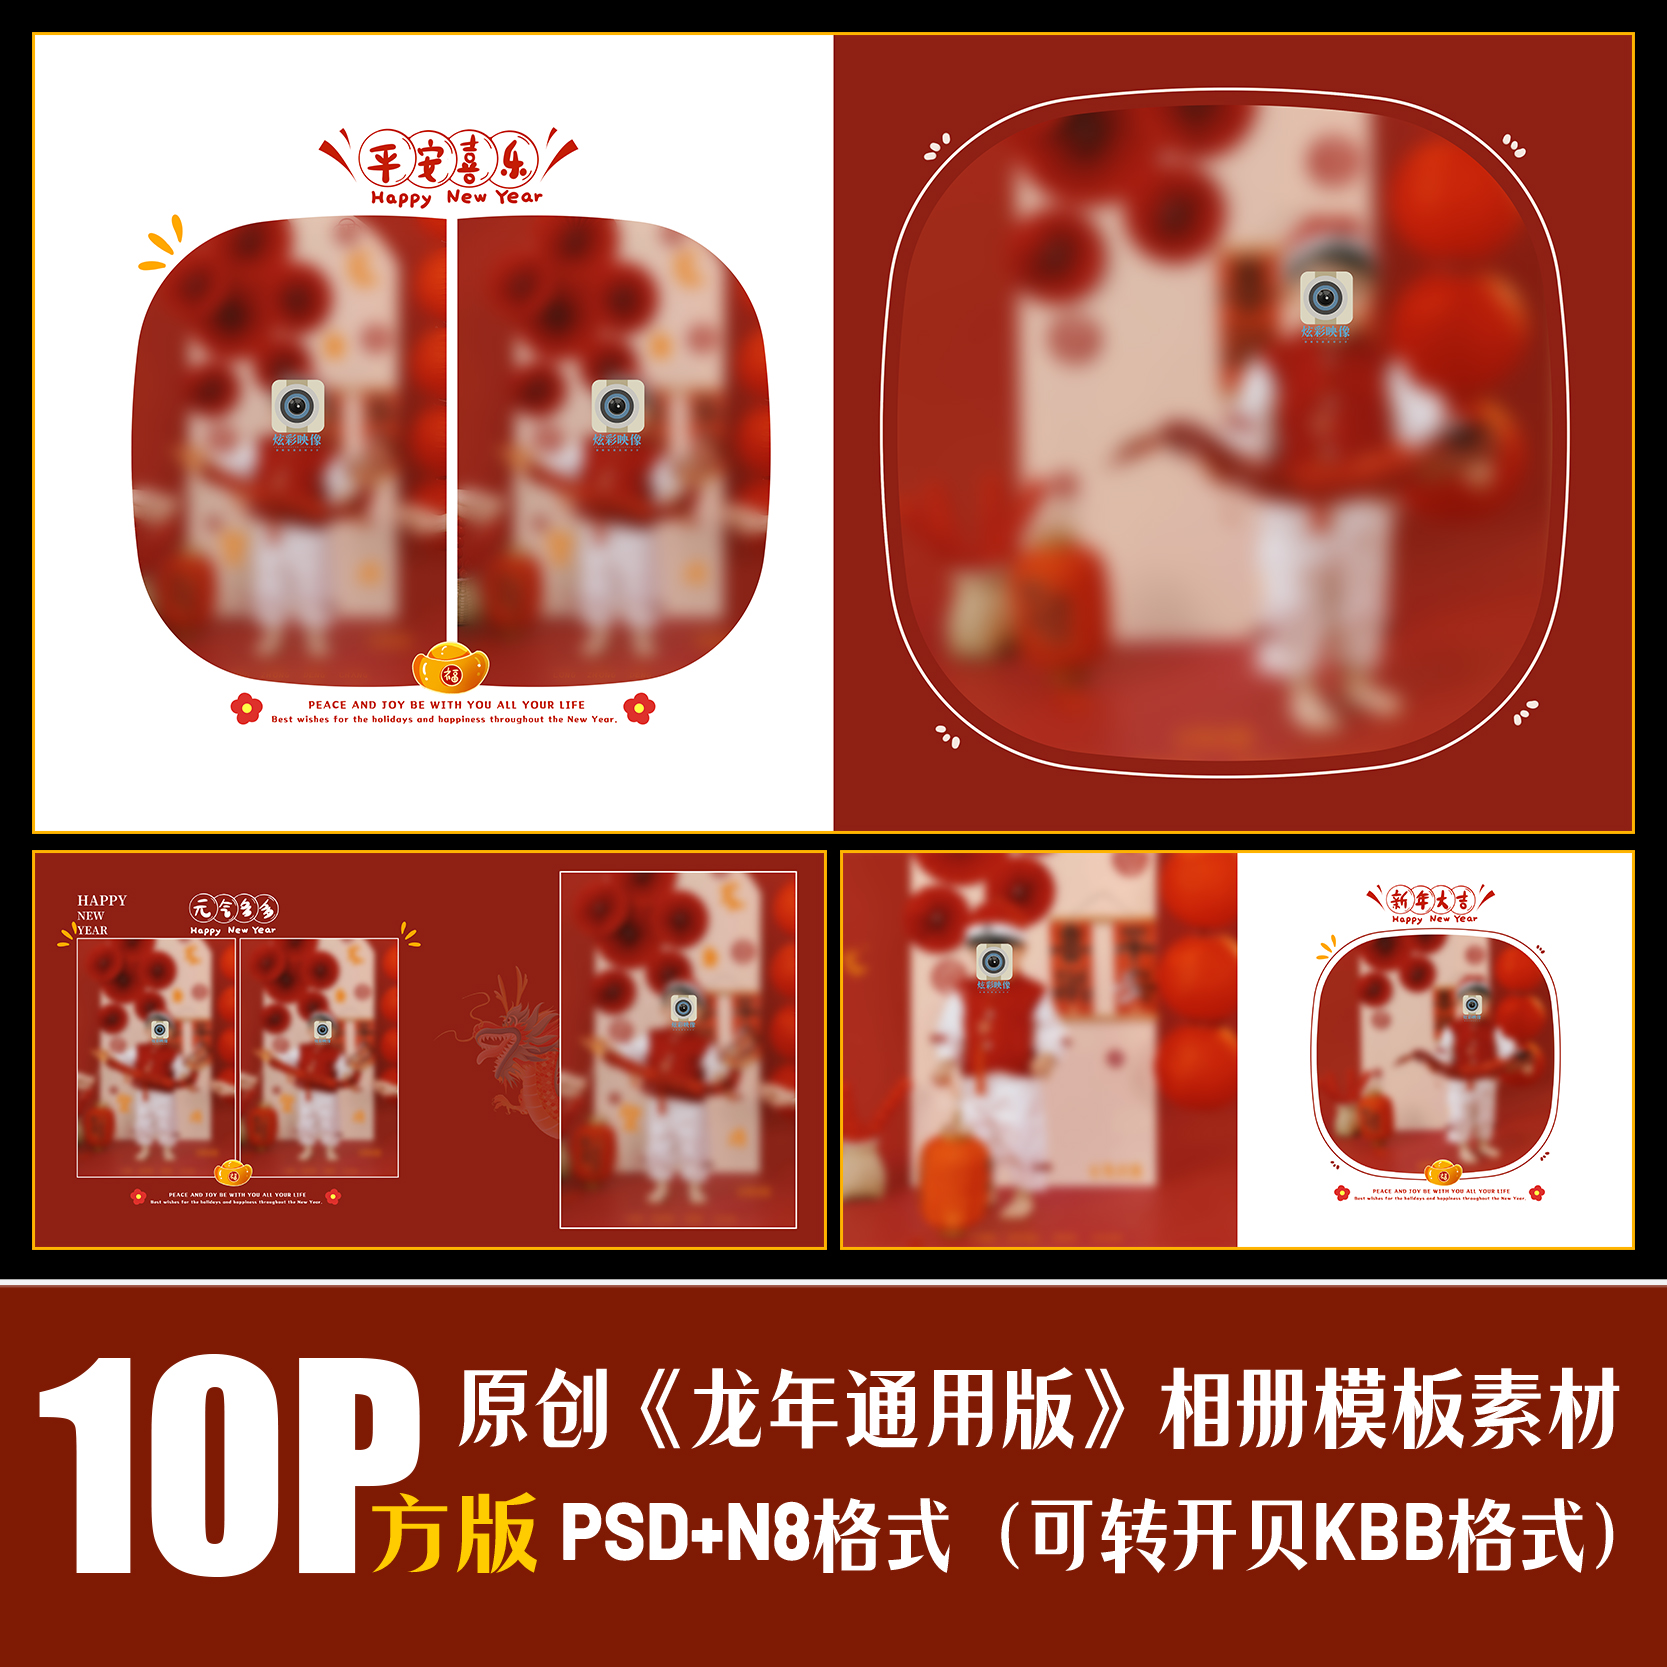 414龙新年相册PSD儿童写真模板春节红色喜庆摄影楼排版PS素材方版